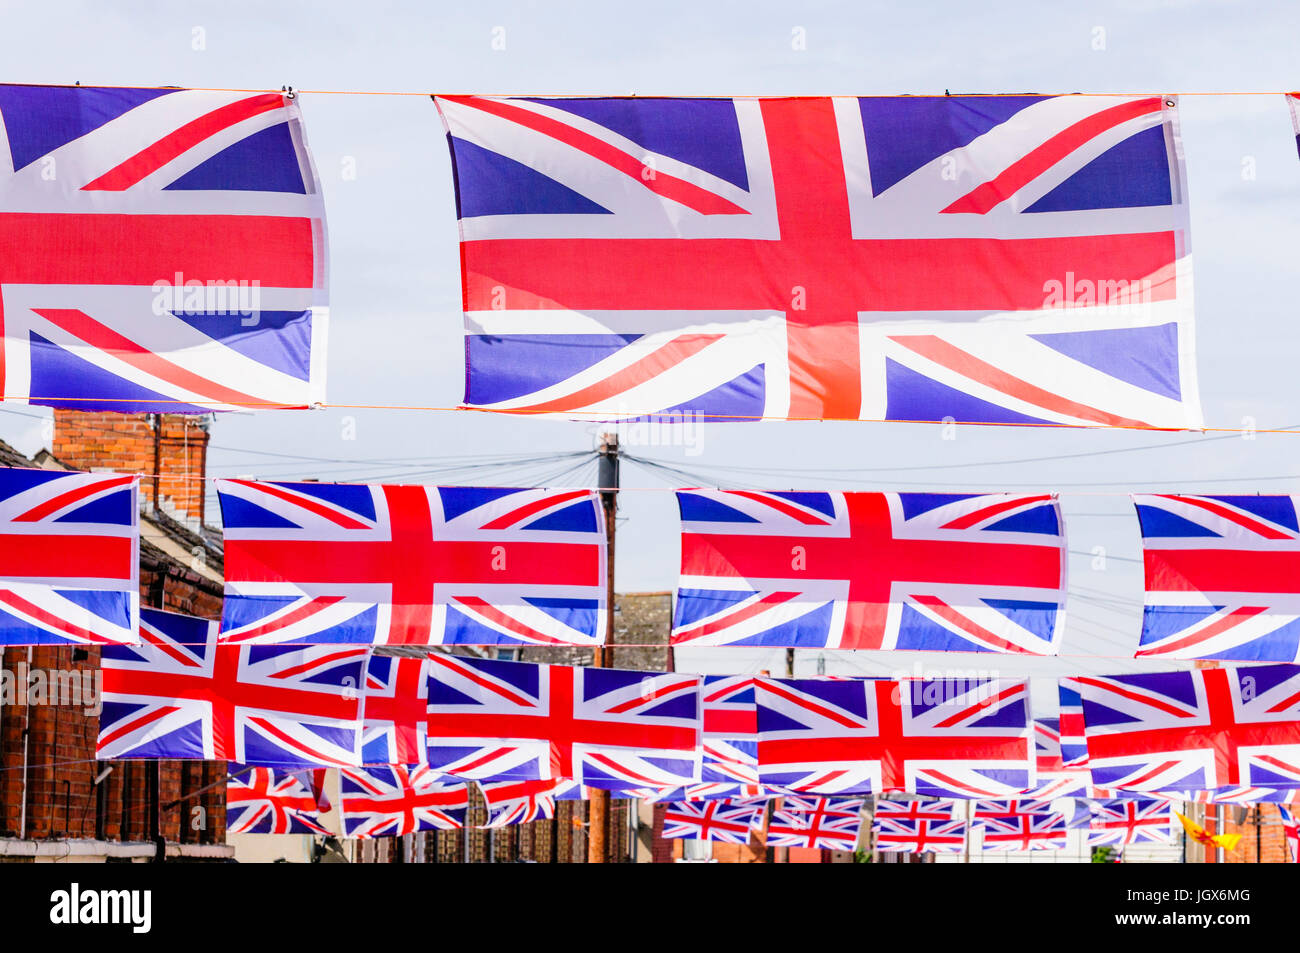 Belfast, Nordirland, Irland. 11. Juli 2017. Moorgate Street im Osten Belfast ist in Union Flags für die jährliche 12. Juli feiern gestaltet. Credit: Stephen Barnes/Alamy Nachrichten Stockfoto